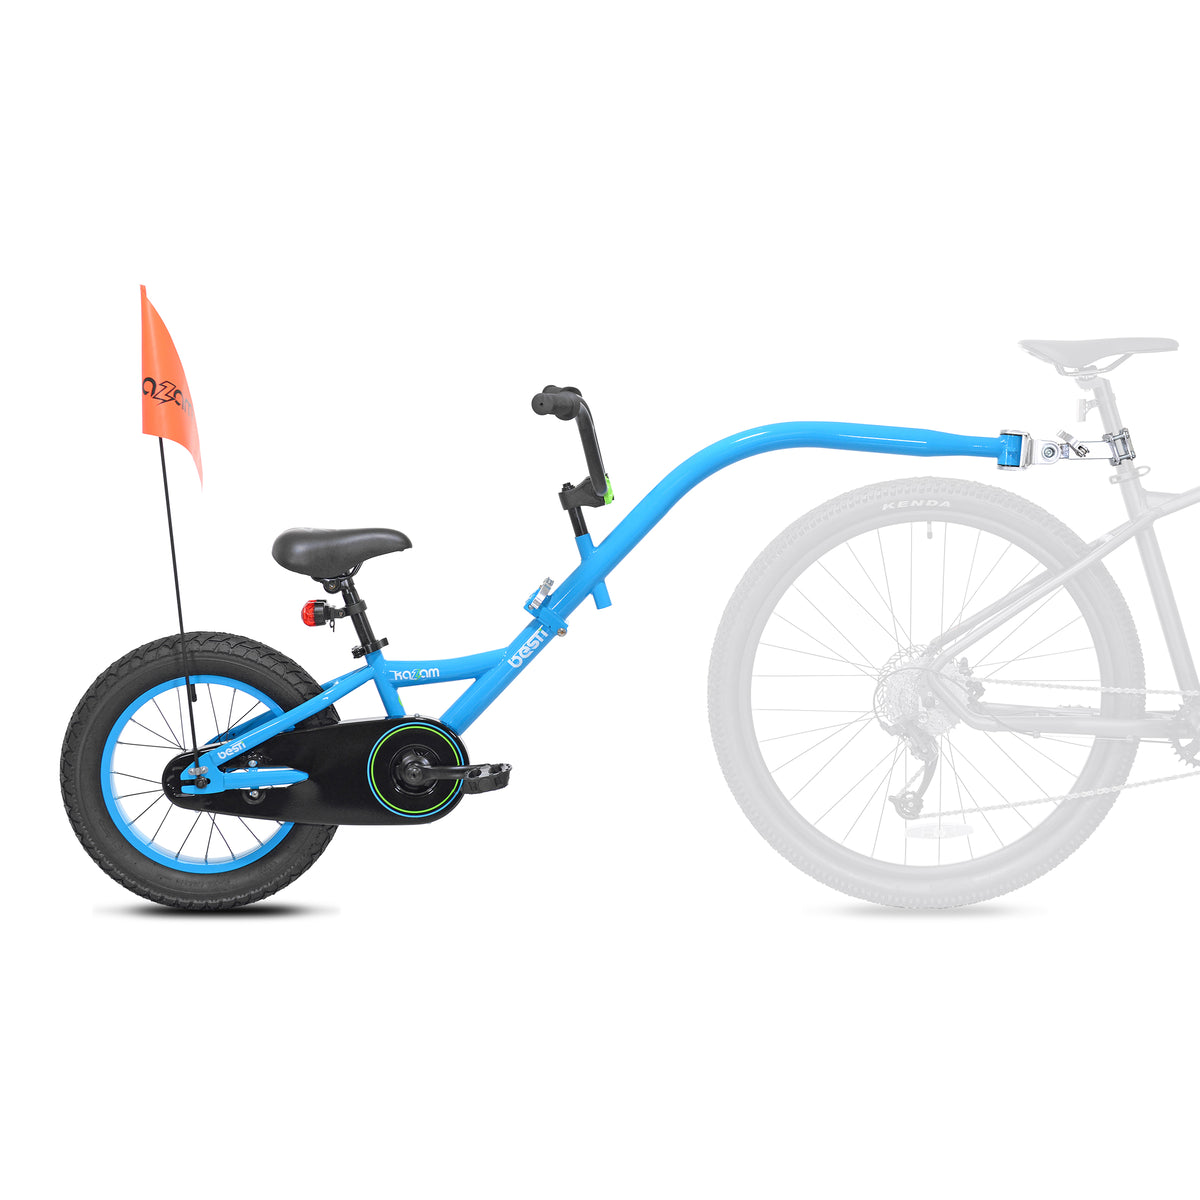 16" Kazam Besti | Trailer Bike for Kids Ages 4+